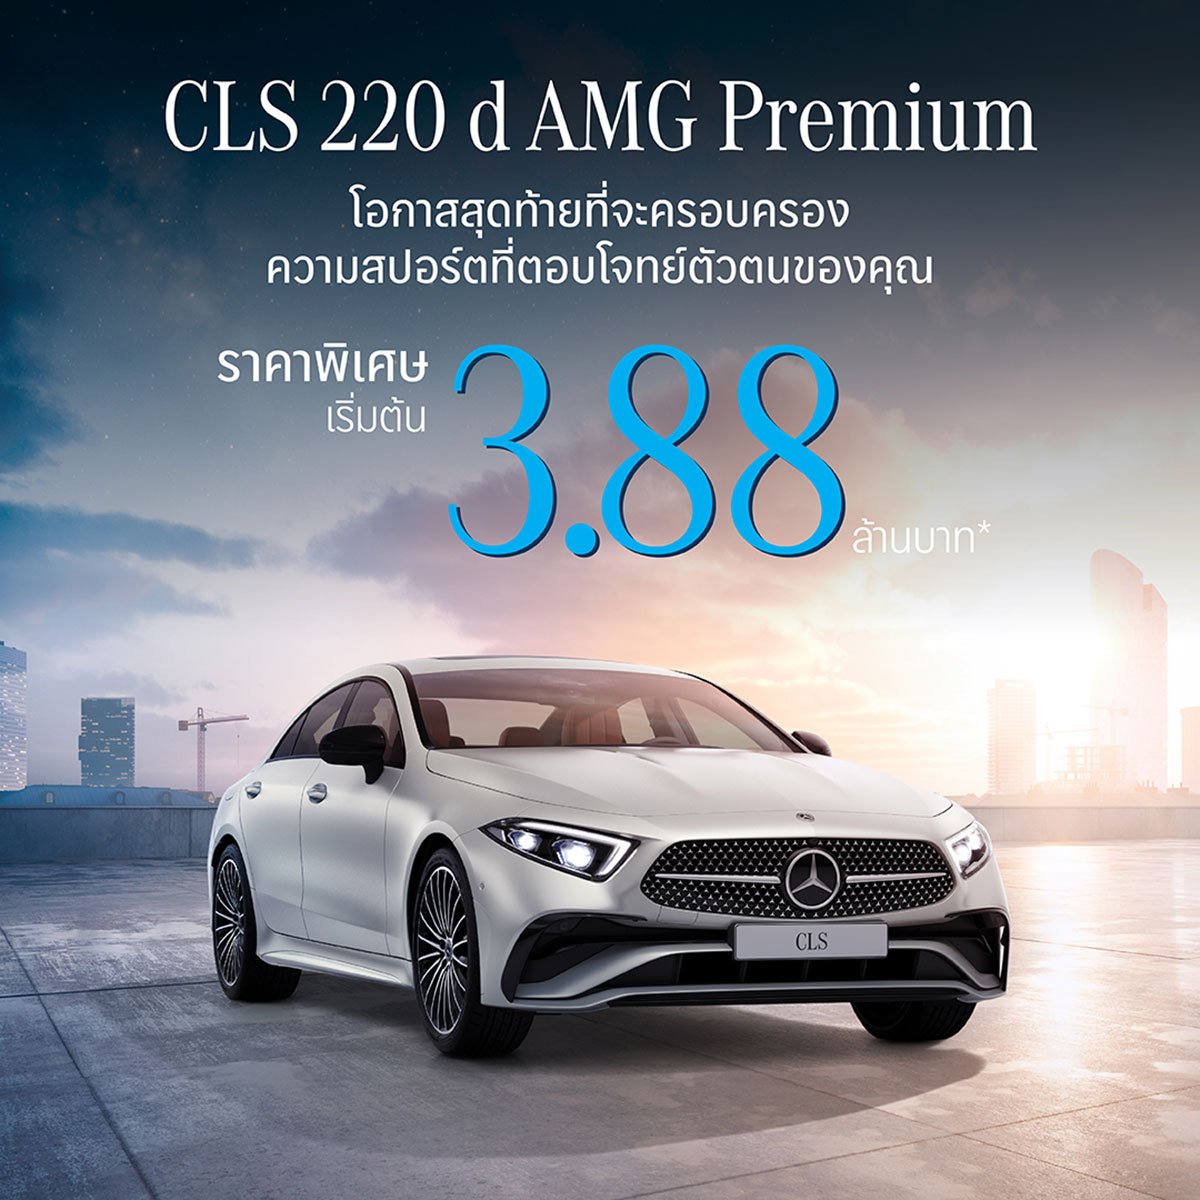 CLS 220 d AMG Premium